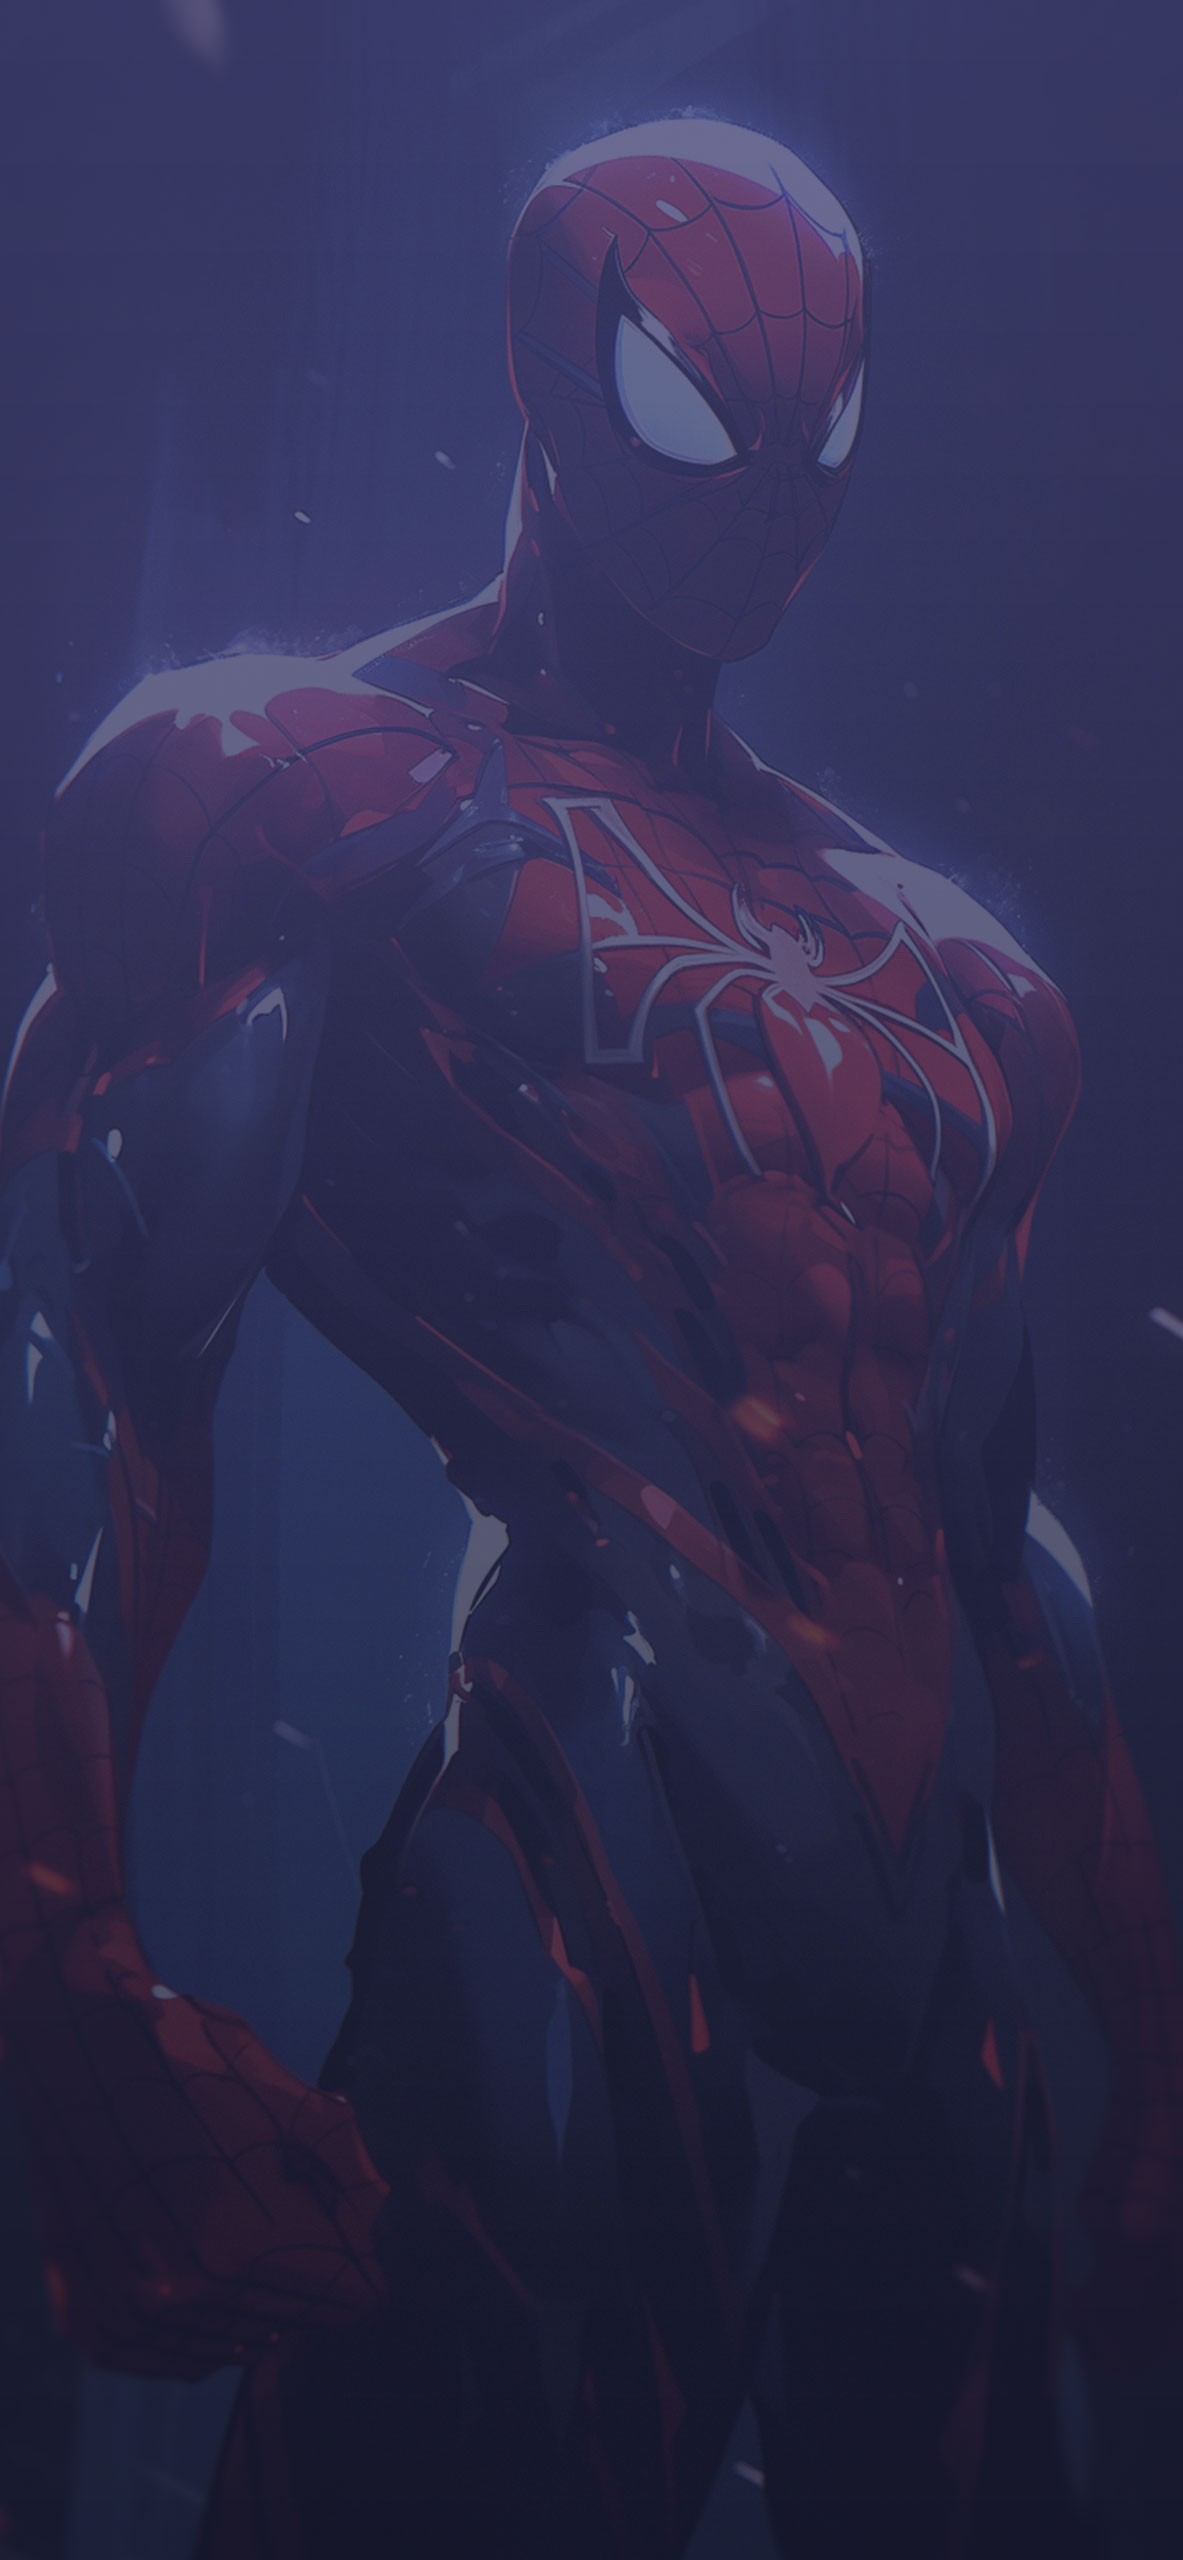 Muscular spiderman dark art wallpaper Marvel background wallpa